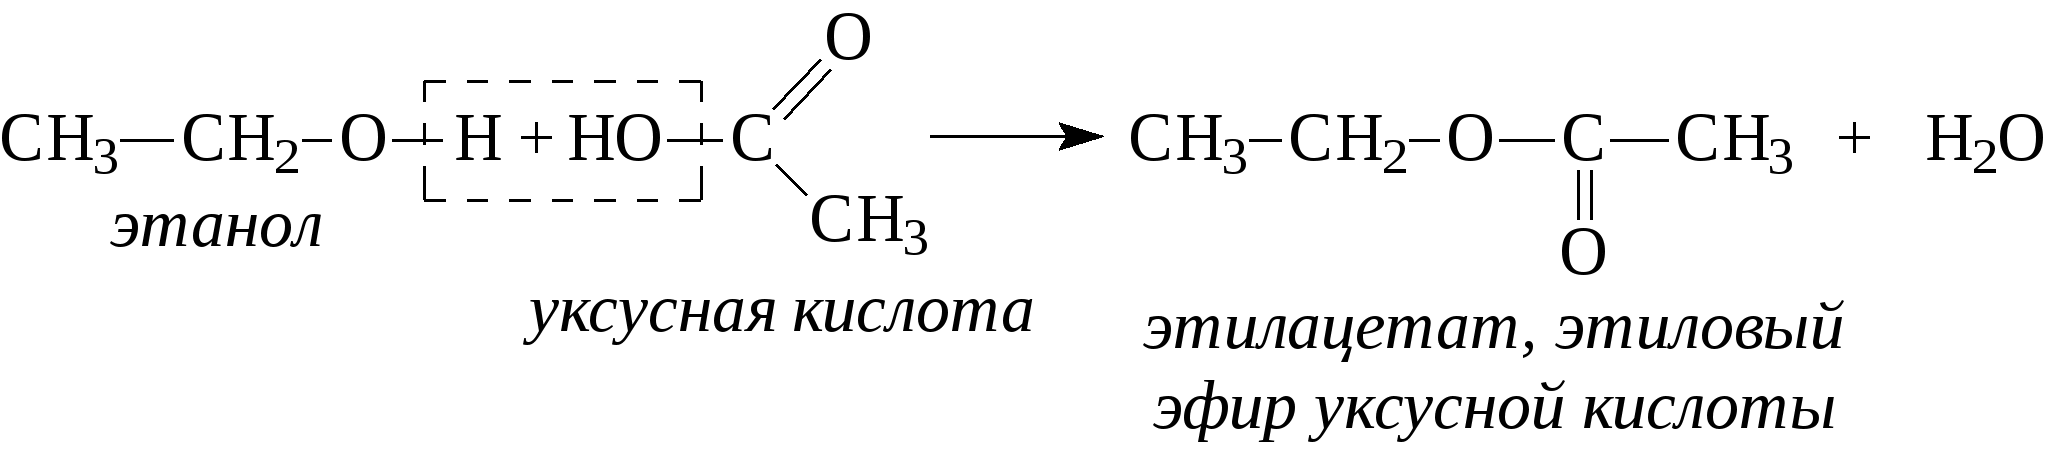 Этилацетат из уксусной кислоты. Как из этанола получить этиловый эфир уксусной кислоты. Синтез этилацетата из уксусной кислоты. Уксусная кислота этиловый эфир уксусной кислоты реакция.